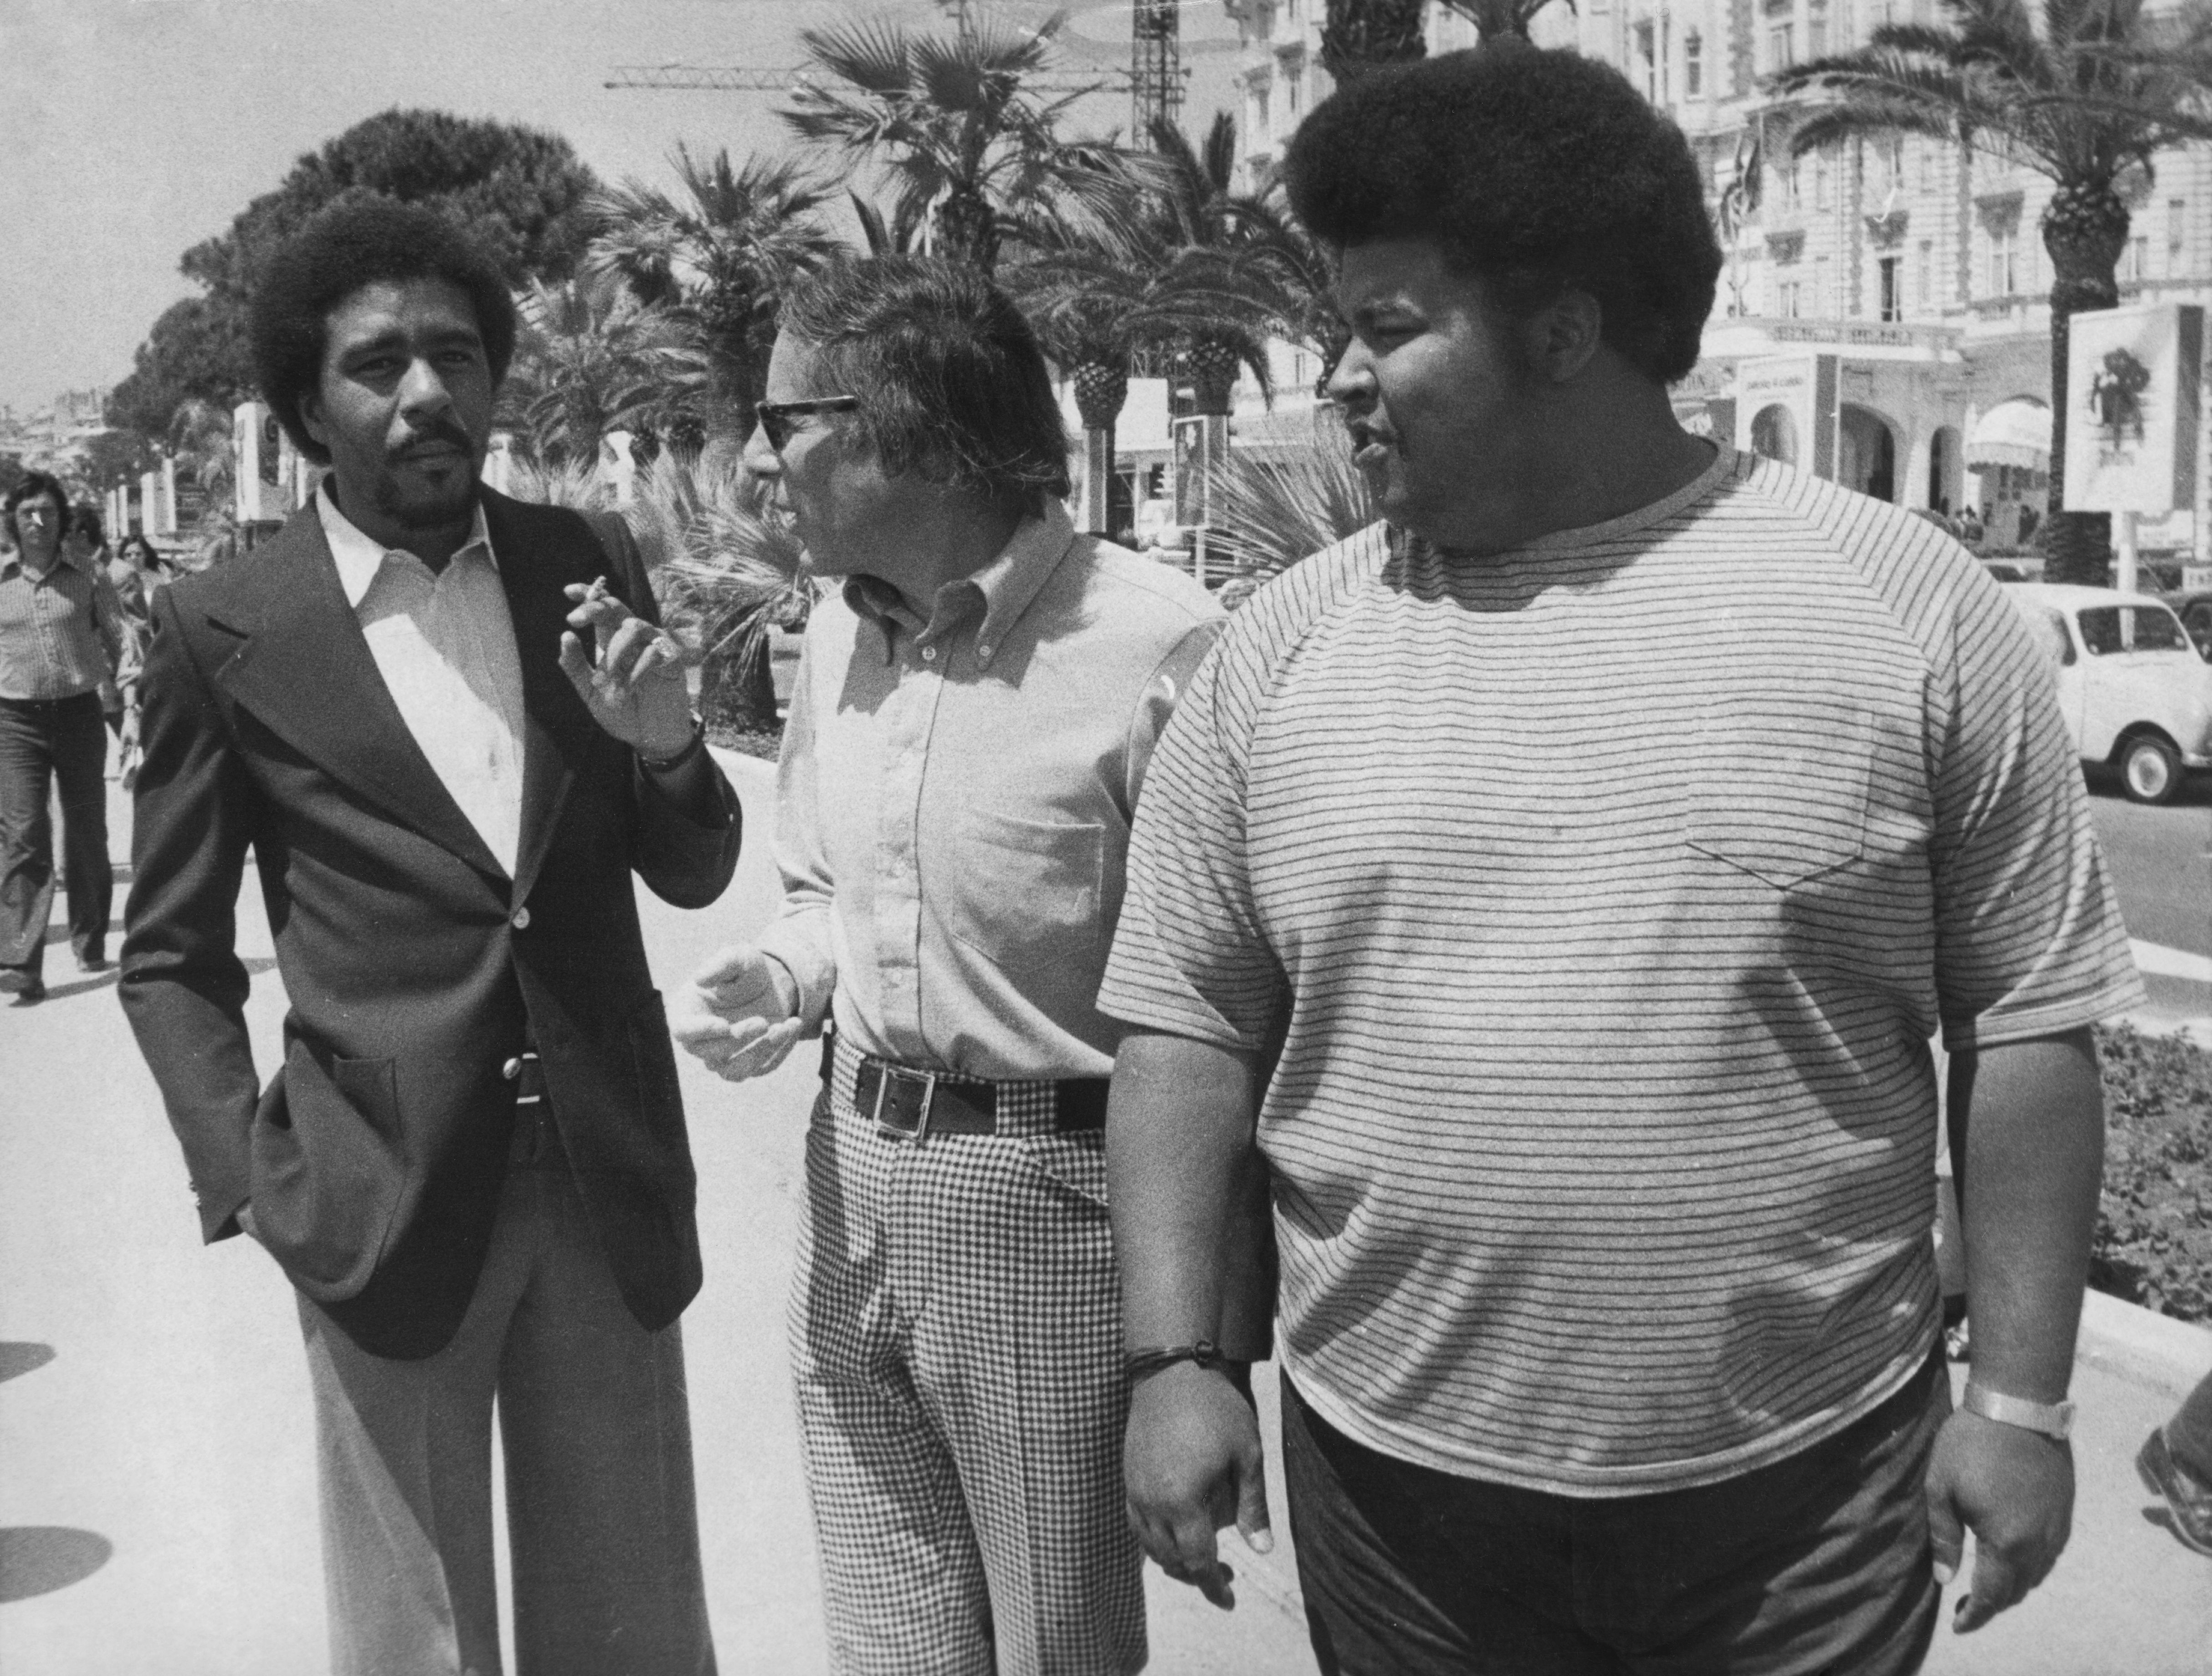 Da esquerda para a direita, o ator Richard Pryor, o diretor Mel Stuart e o produtor Forest Hamilton na Croisette durante o Festival de Cinema de Cannes na França, onde estão promovendo seu filme